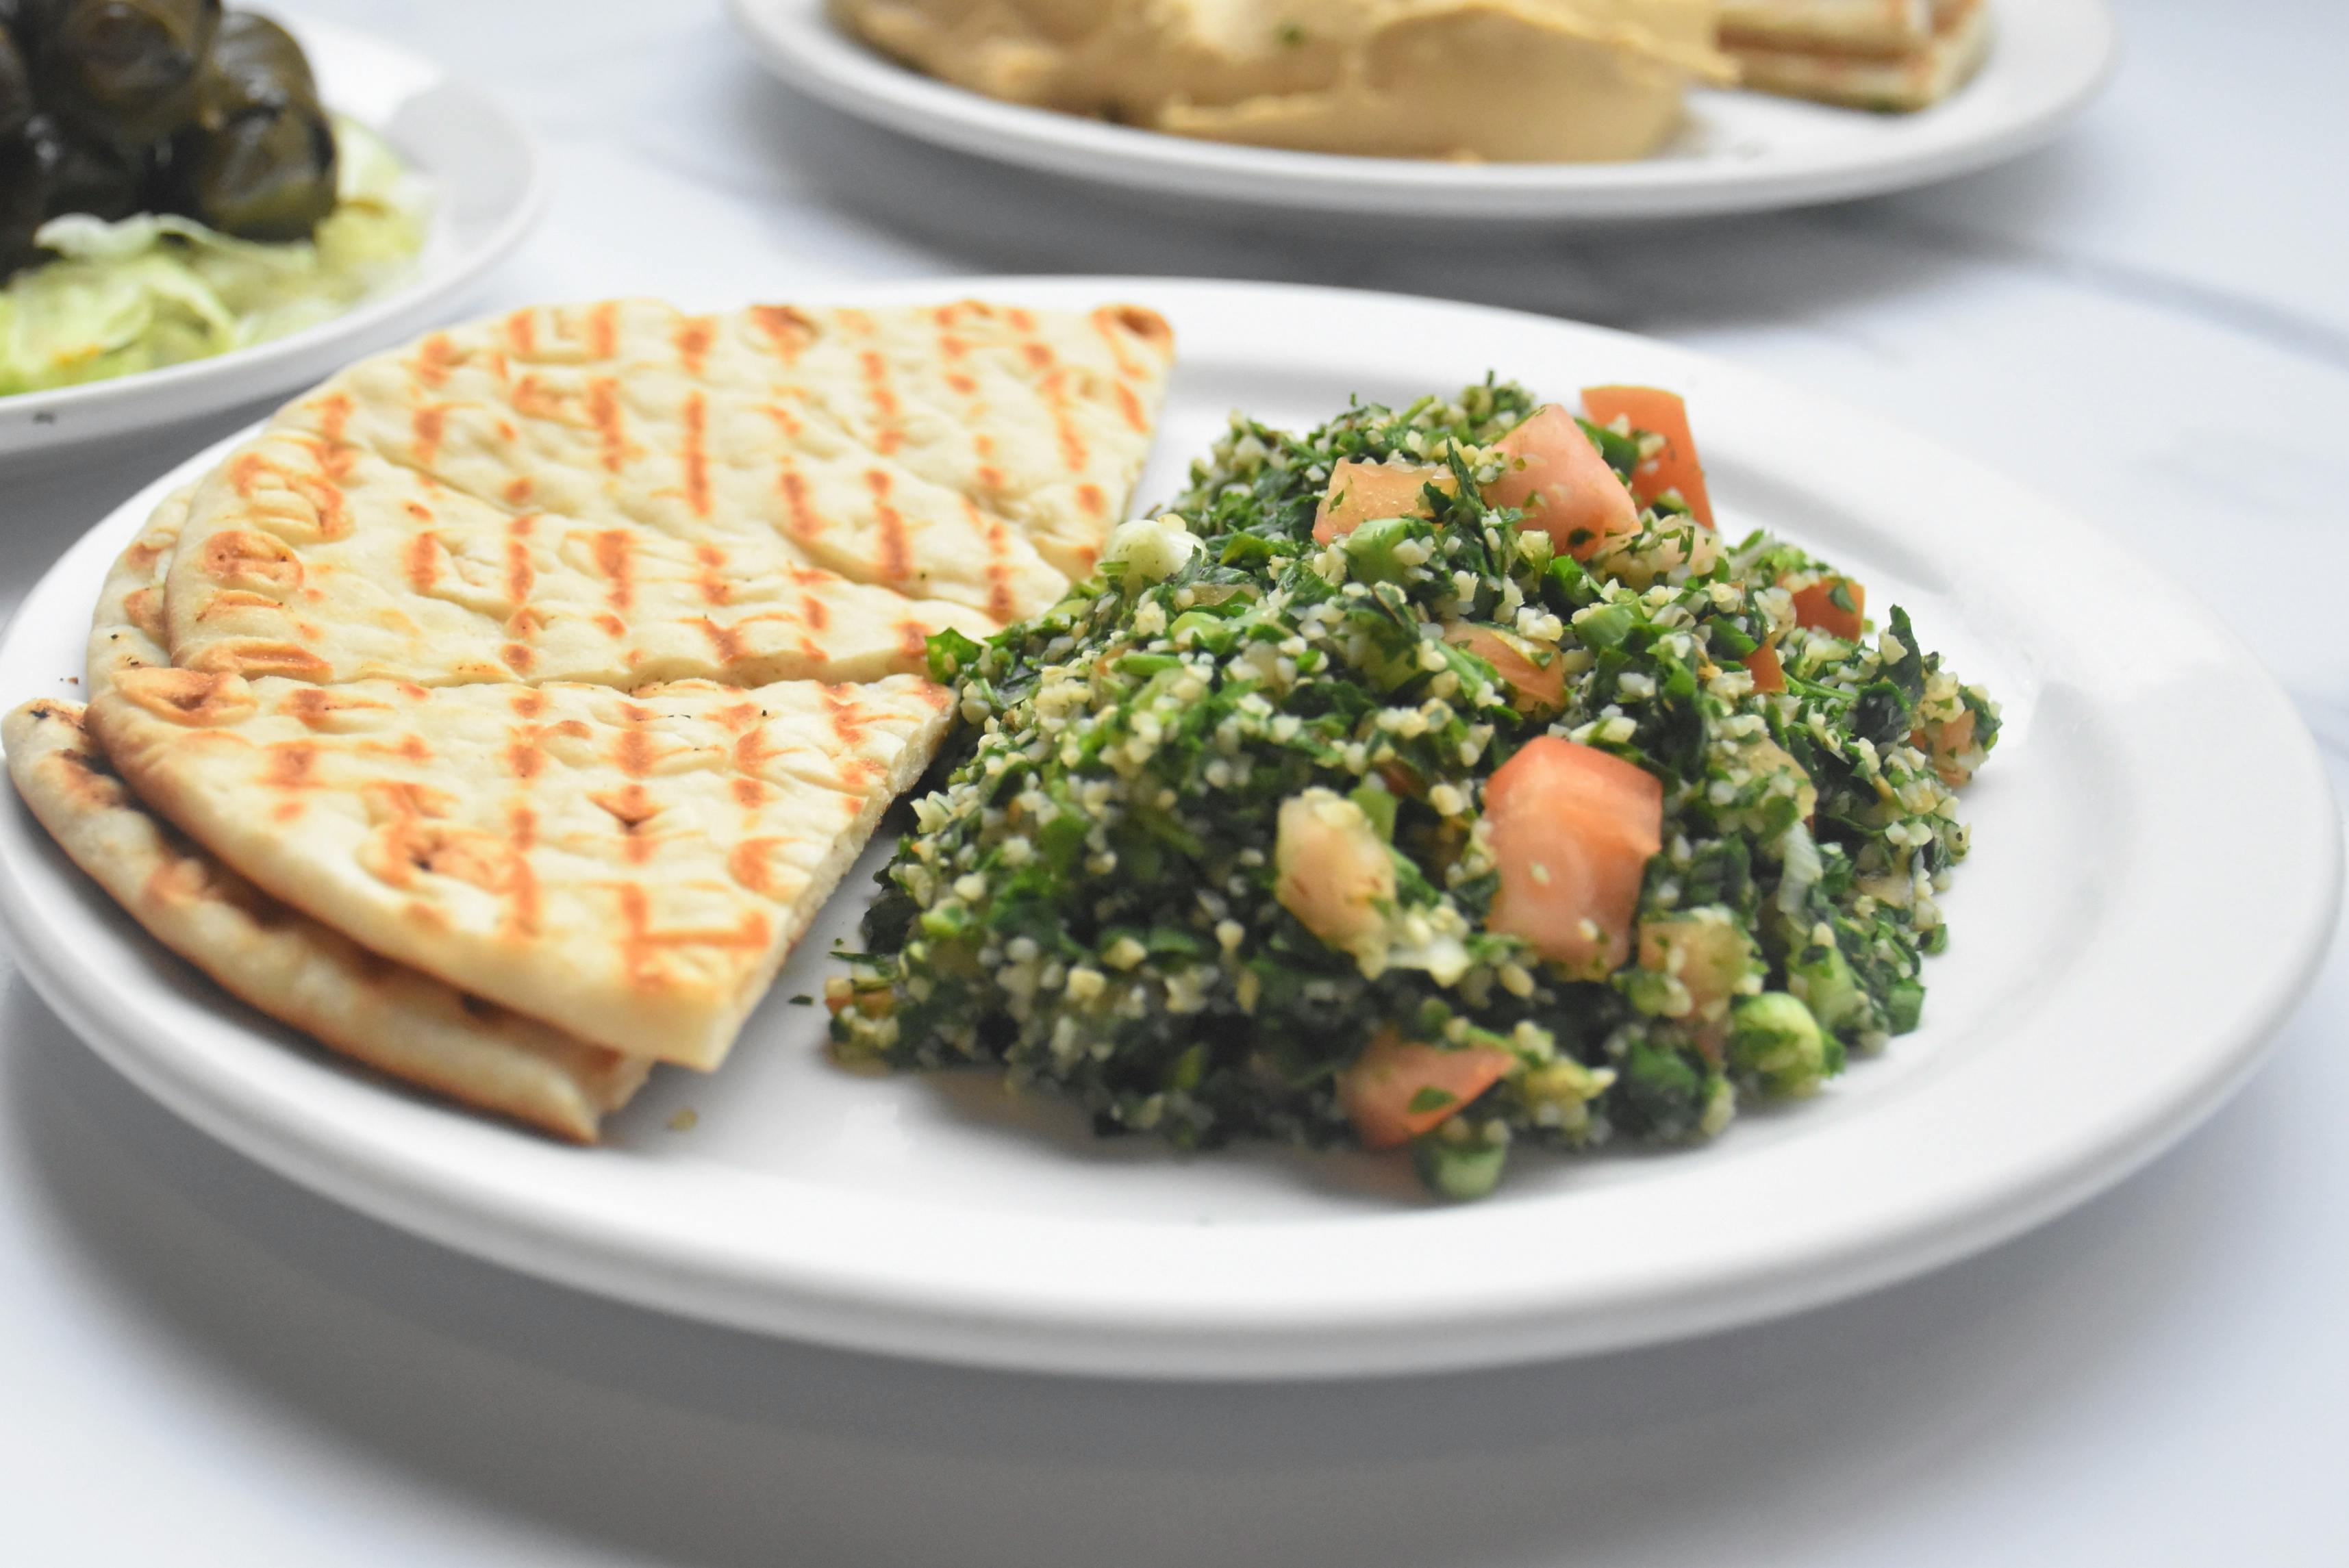 Tabbouli Salad & Pita Dish